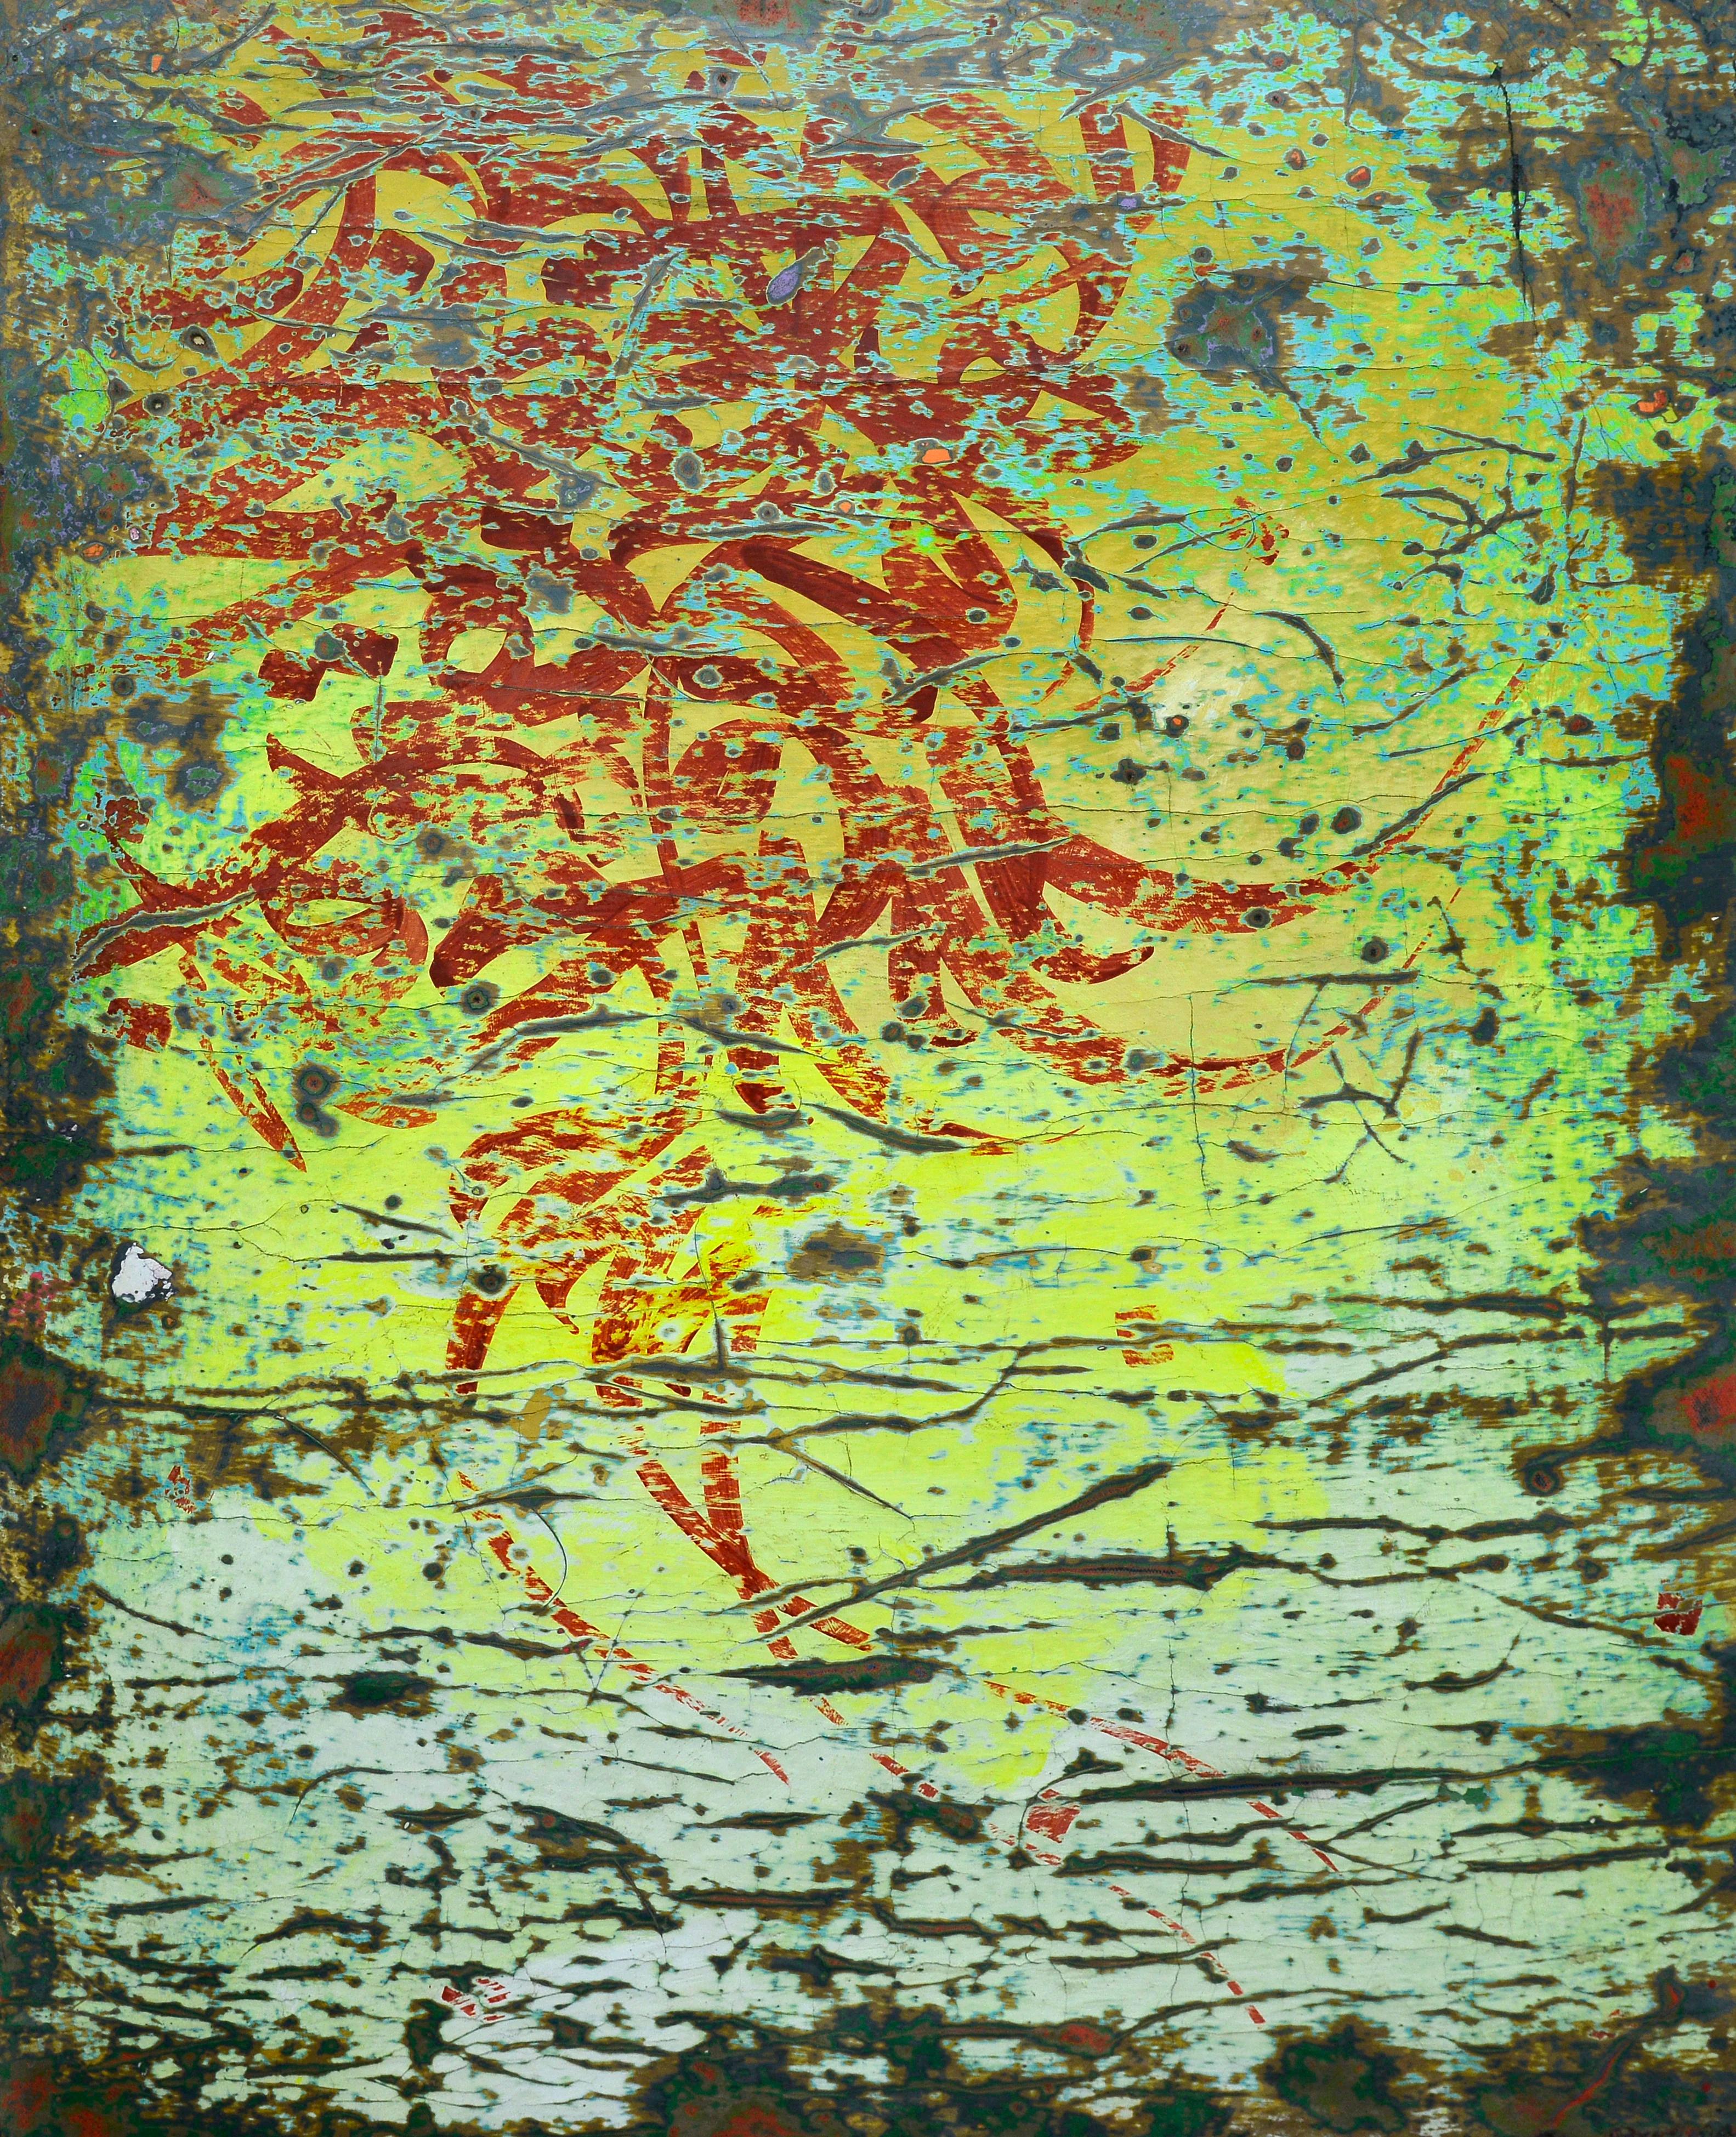 „Abstrakte Kalligrafie“ Gemälde auf Leinwand und Holz 53" x 39" in von Ibrahim Khatab

Ibrahim Khatab wurde 1984 in Kairo geboren, arbeitet als Co-Dozent an der Universität Kairo und mischt in seinen Werken Malerei, Videokunst und Installation. Er